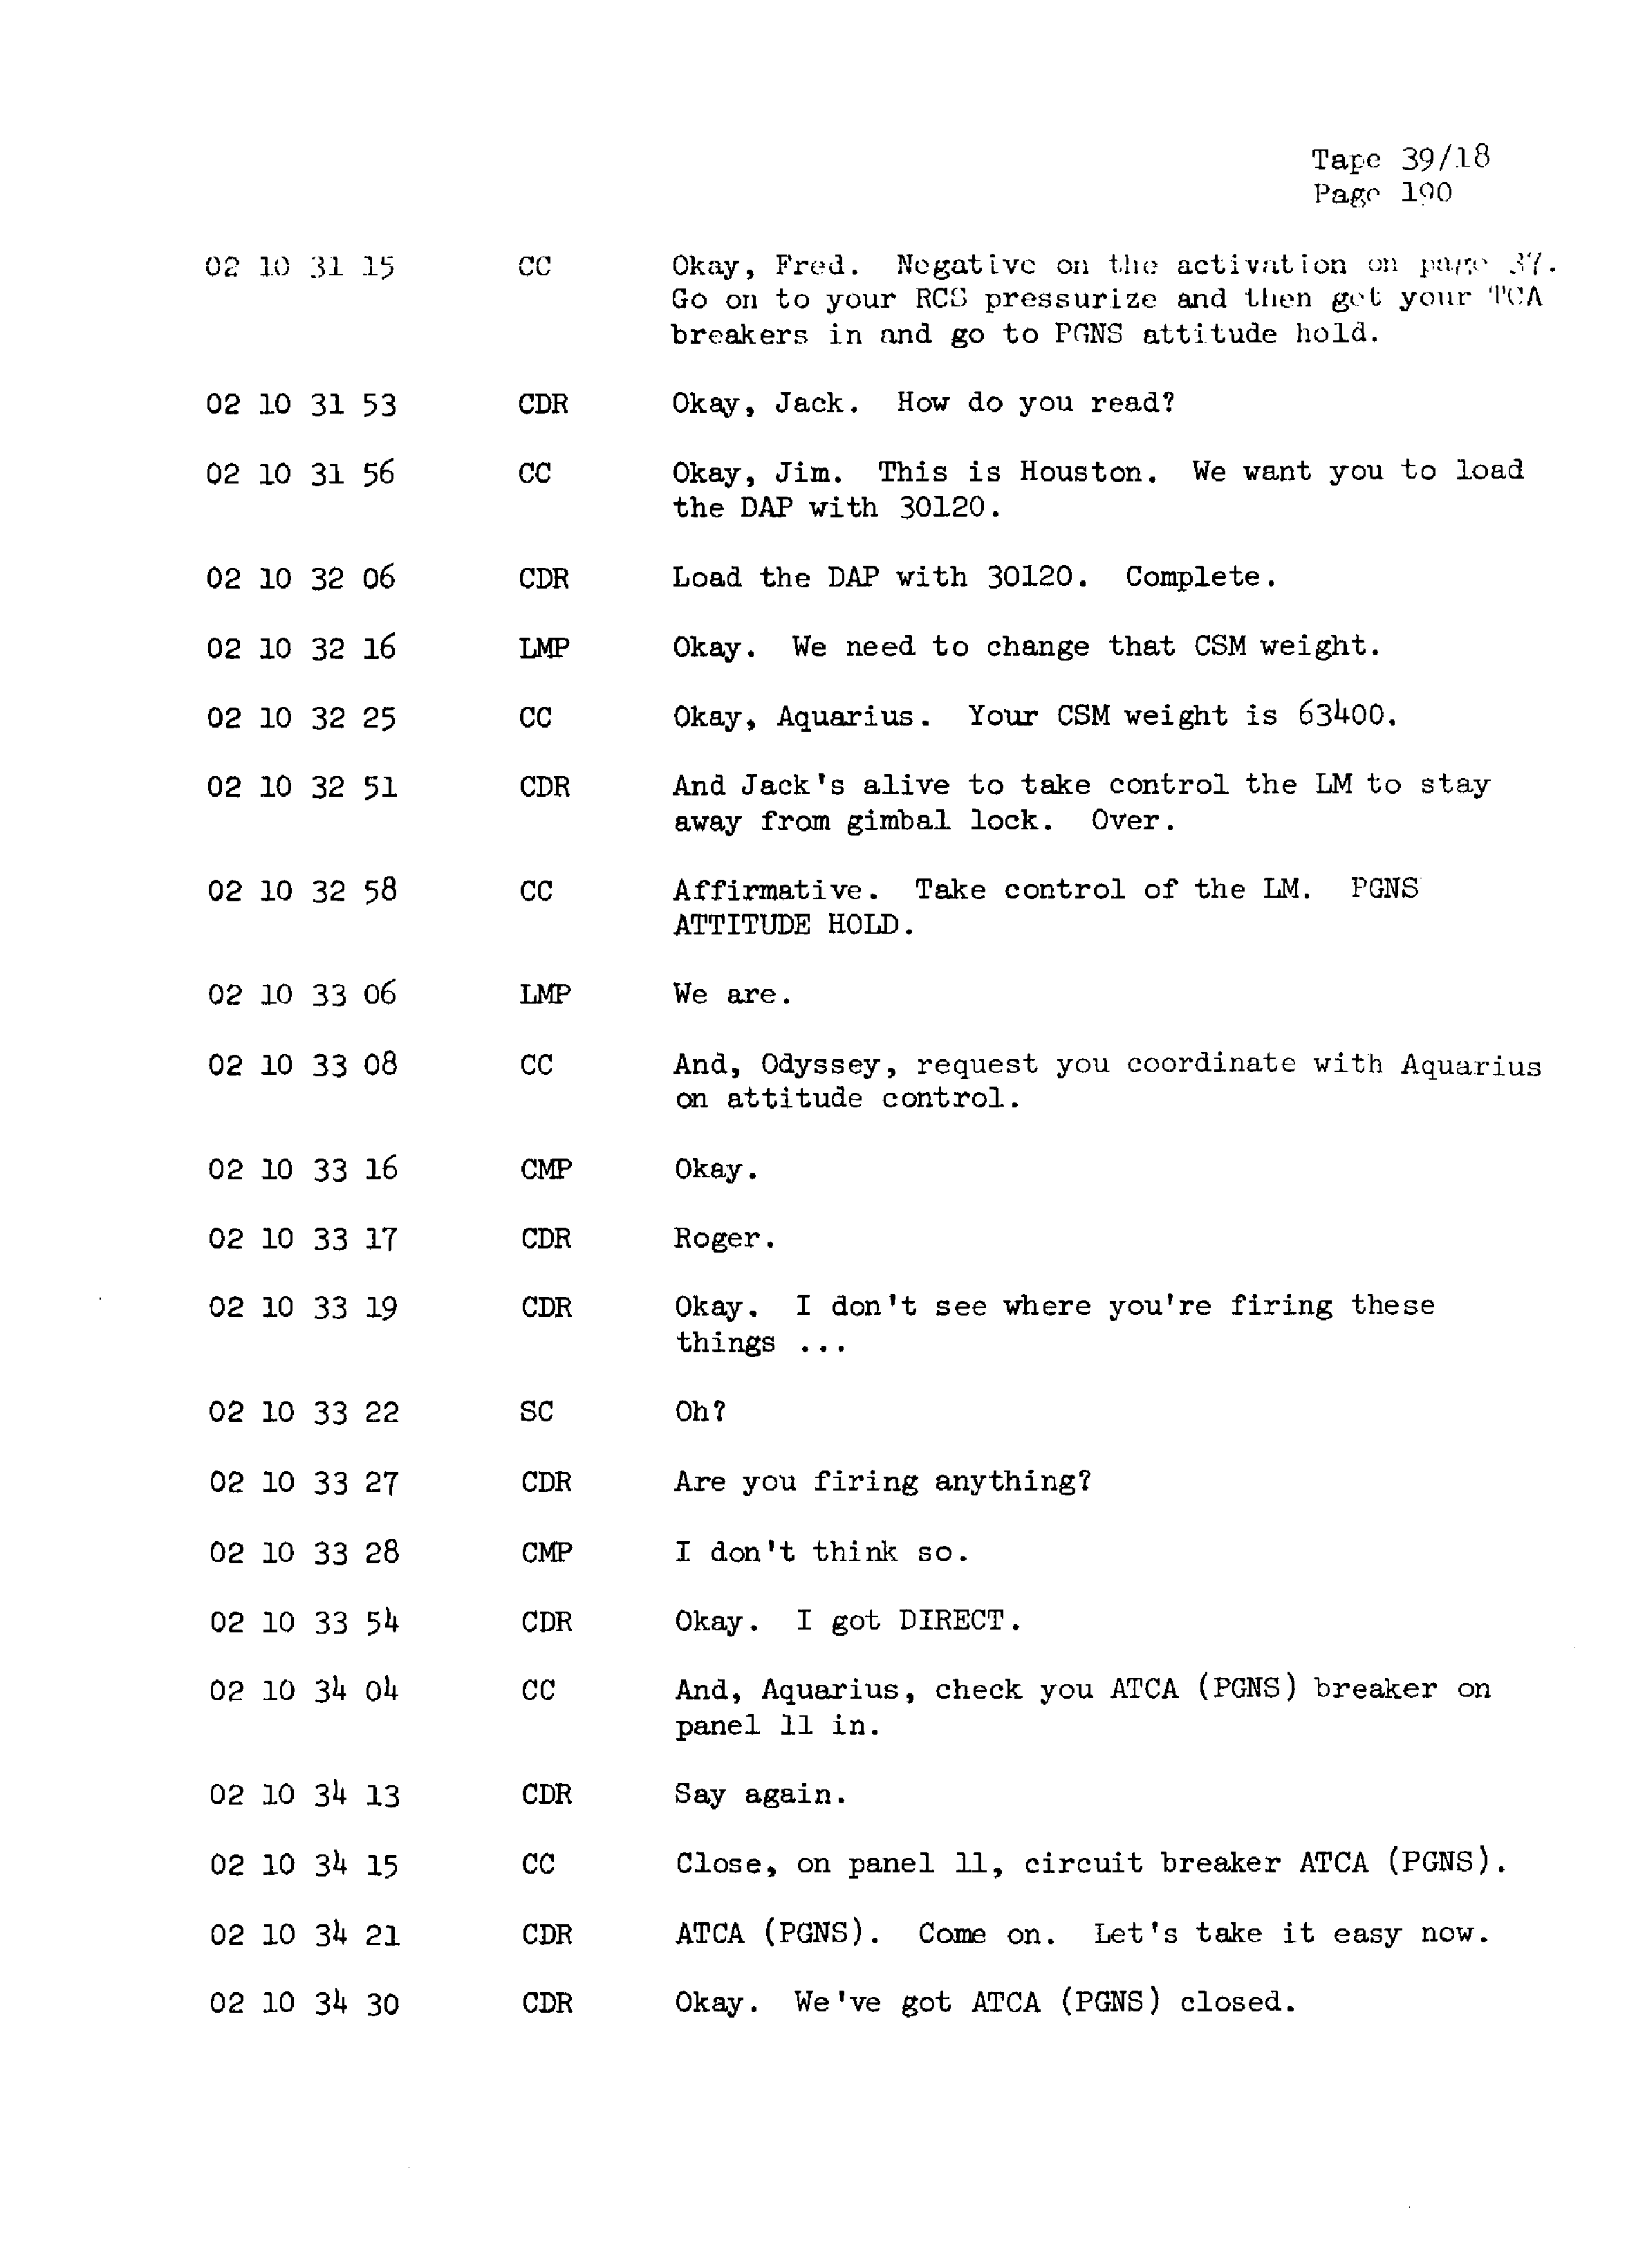 Page 197 of Apollo 13’s original transcript